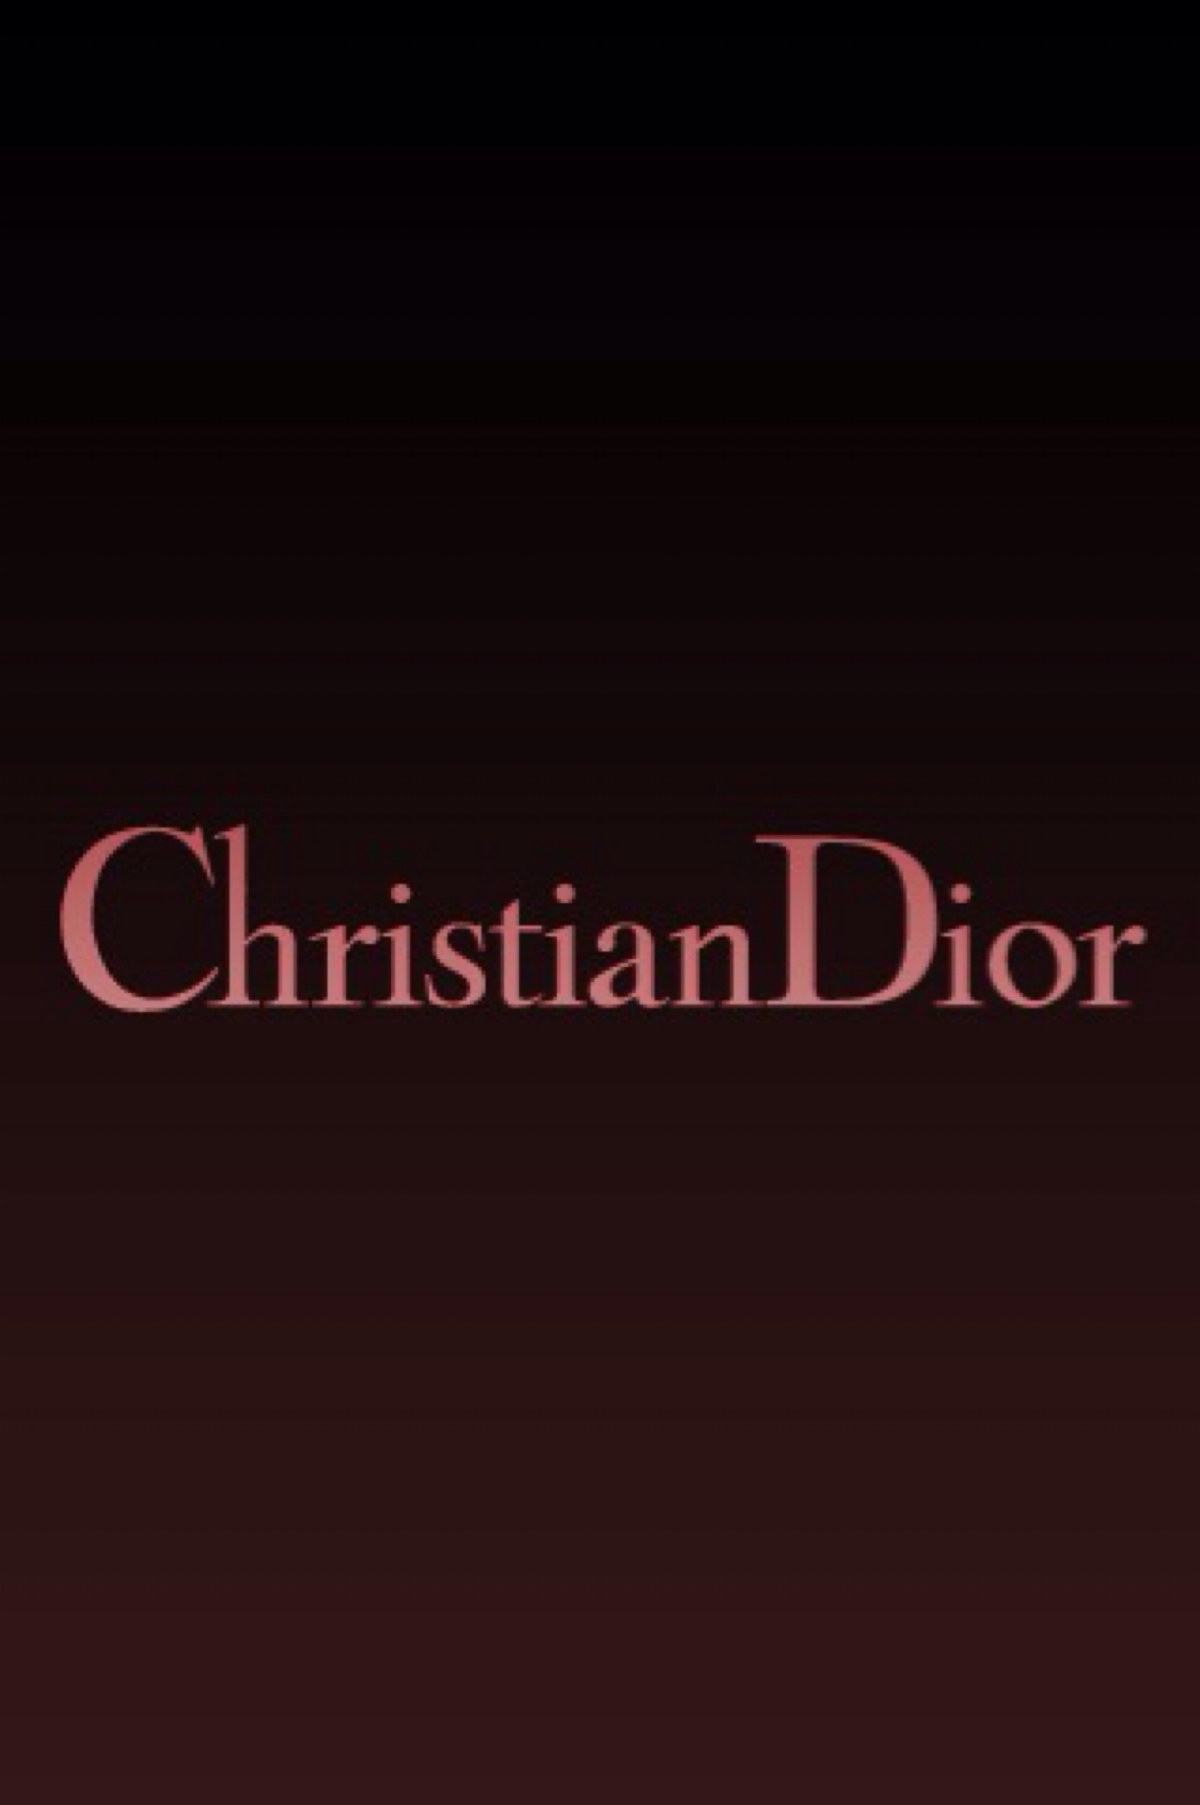 dior壁纸 logo图片